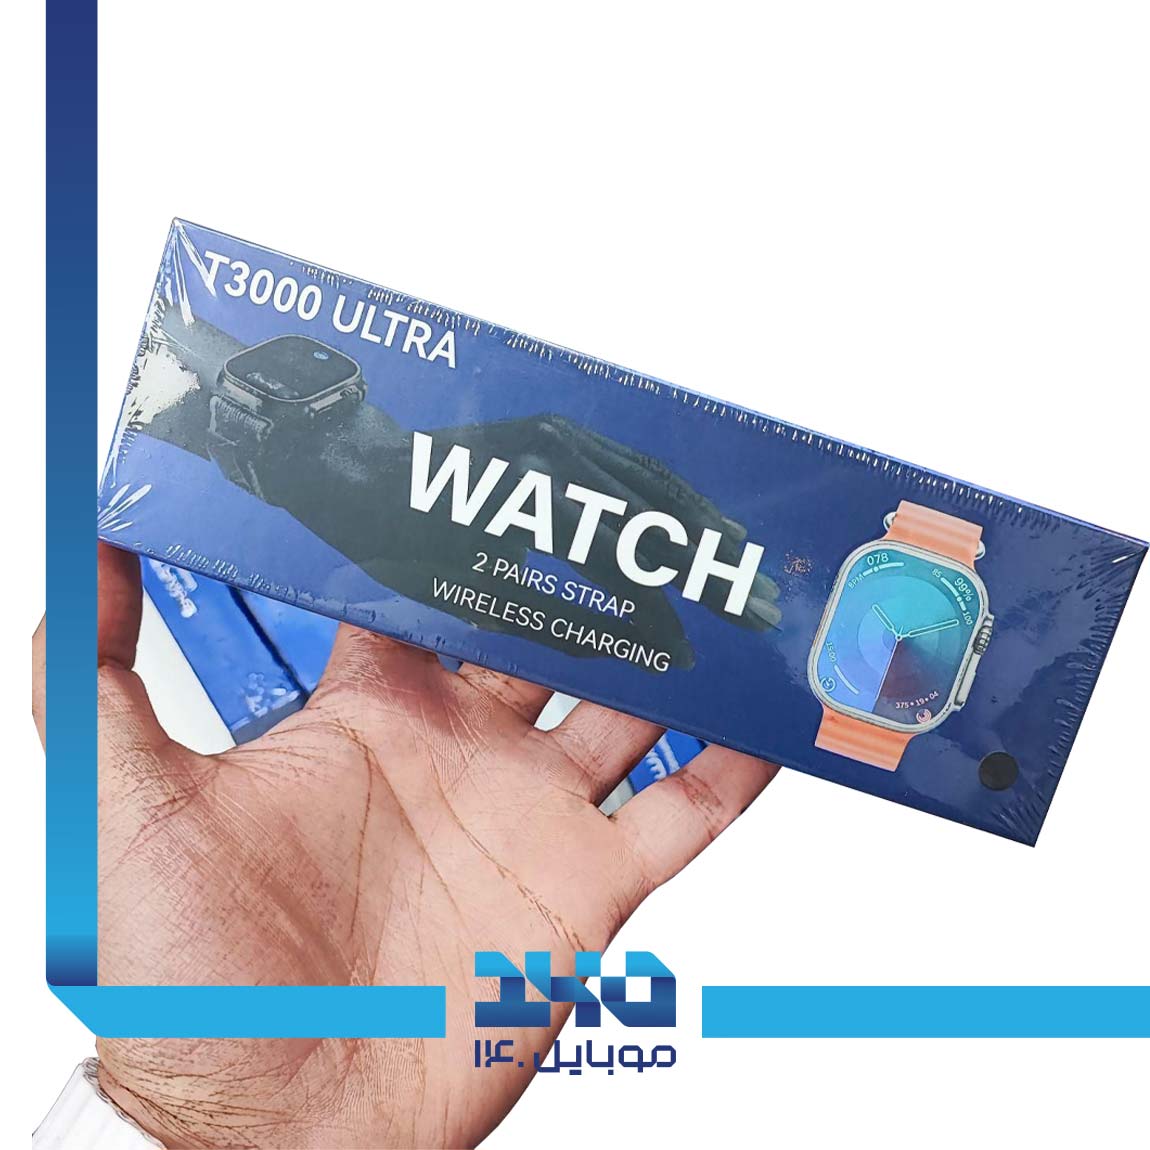 T3000 Ultra Smart Watch 3